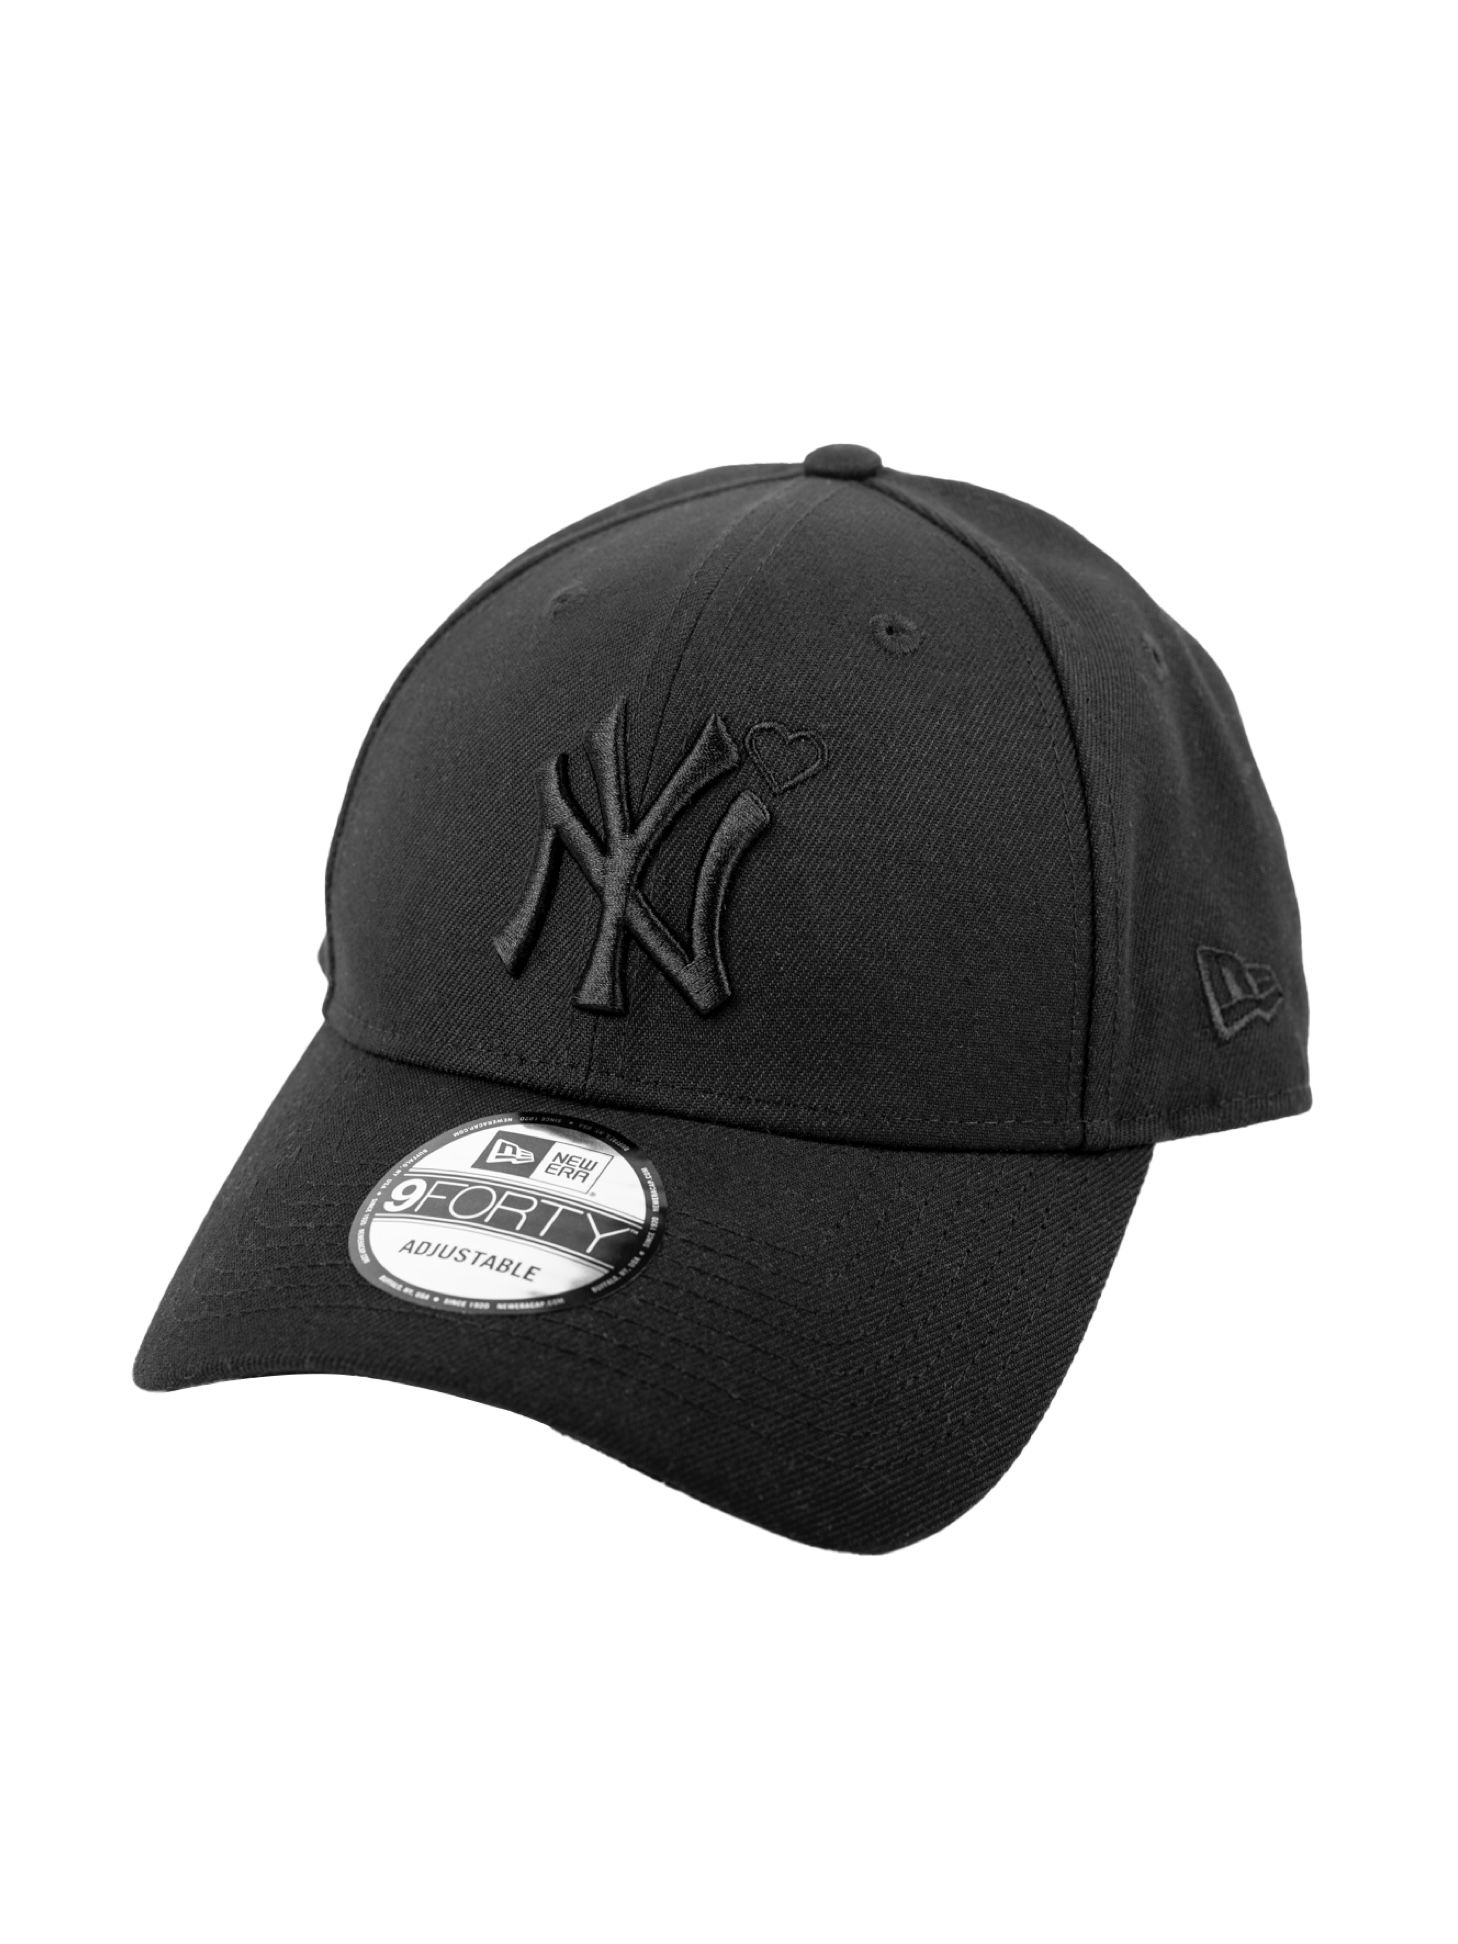 【完売品】BASICKS 24ss newera Yankees cap検討します